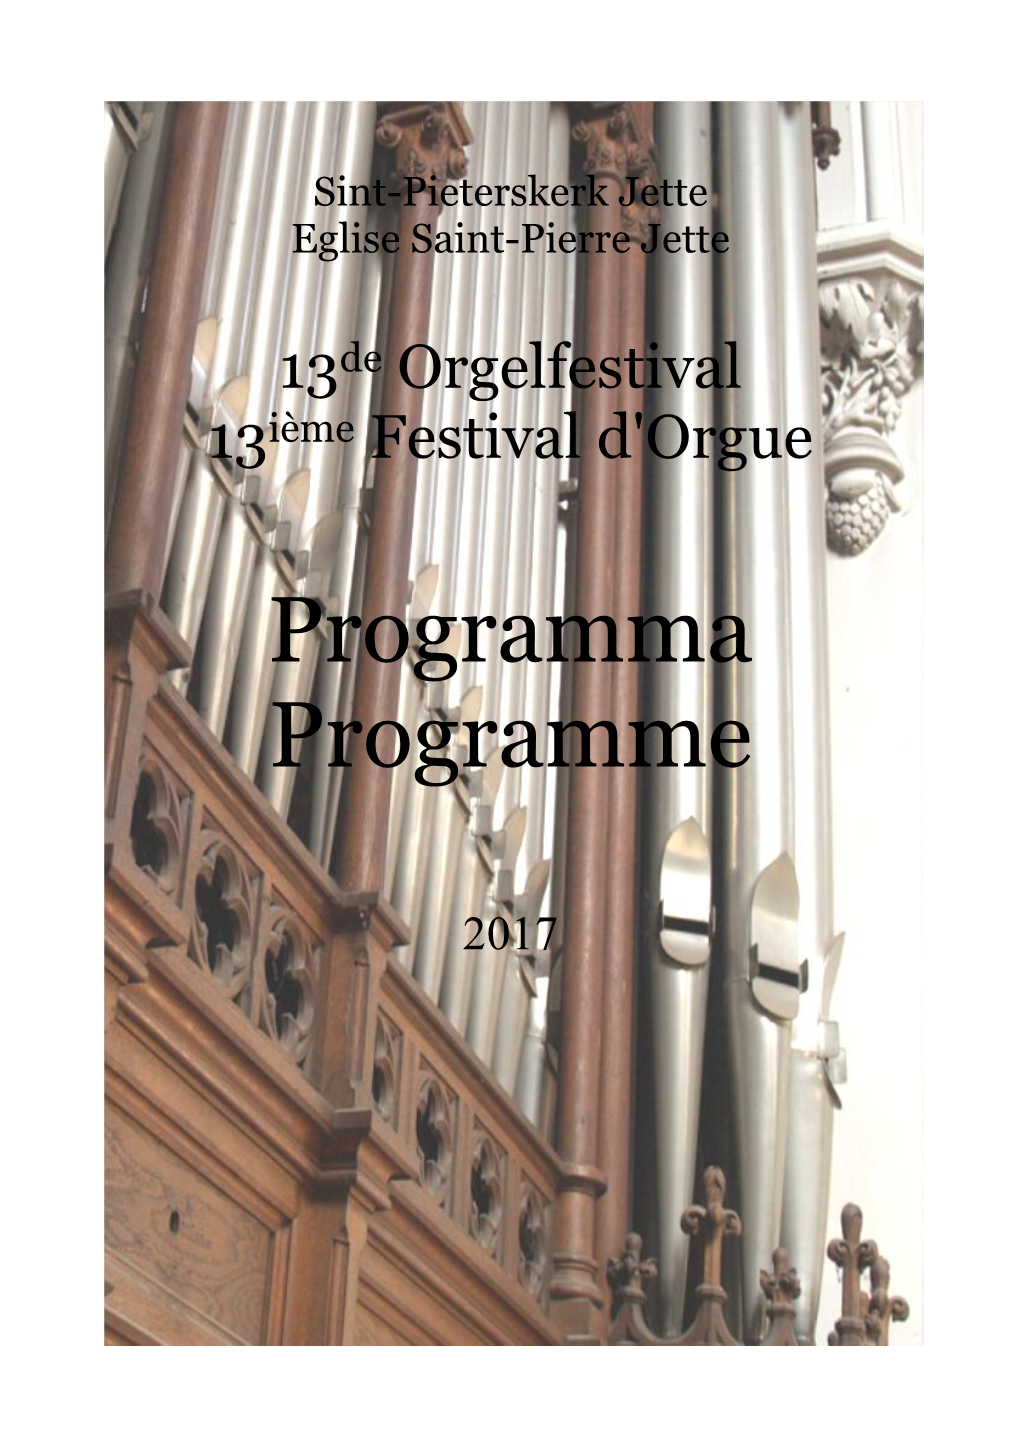 Programma Programme